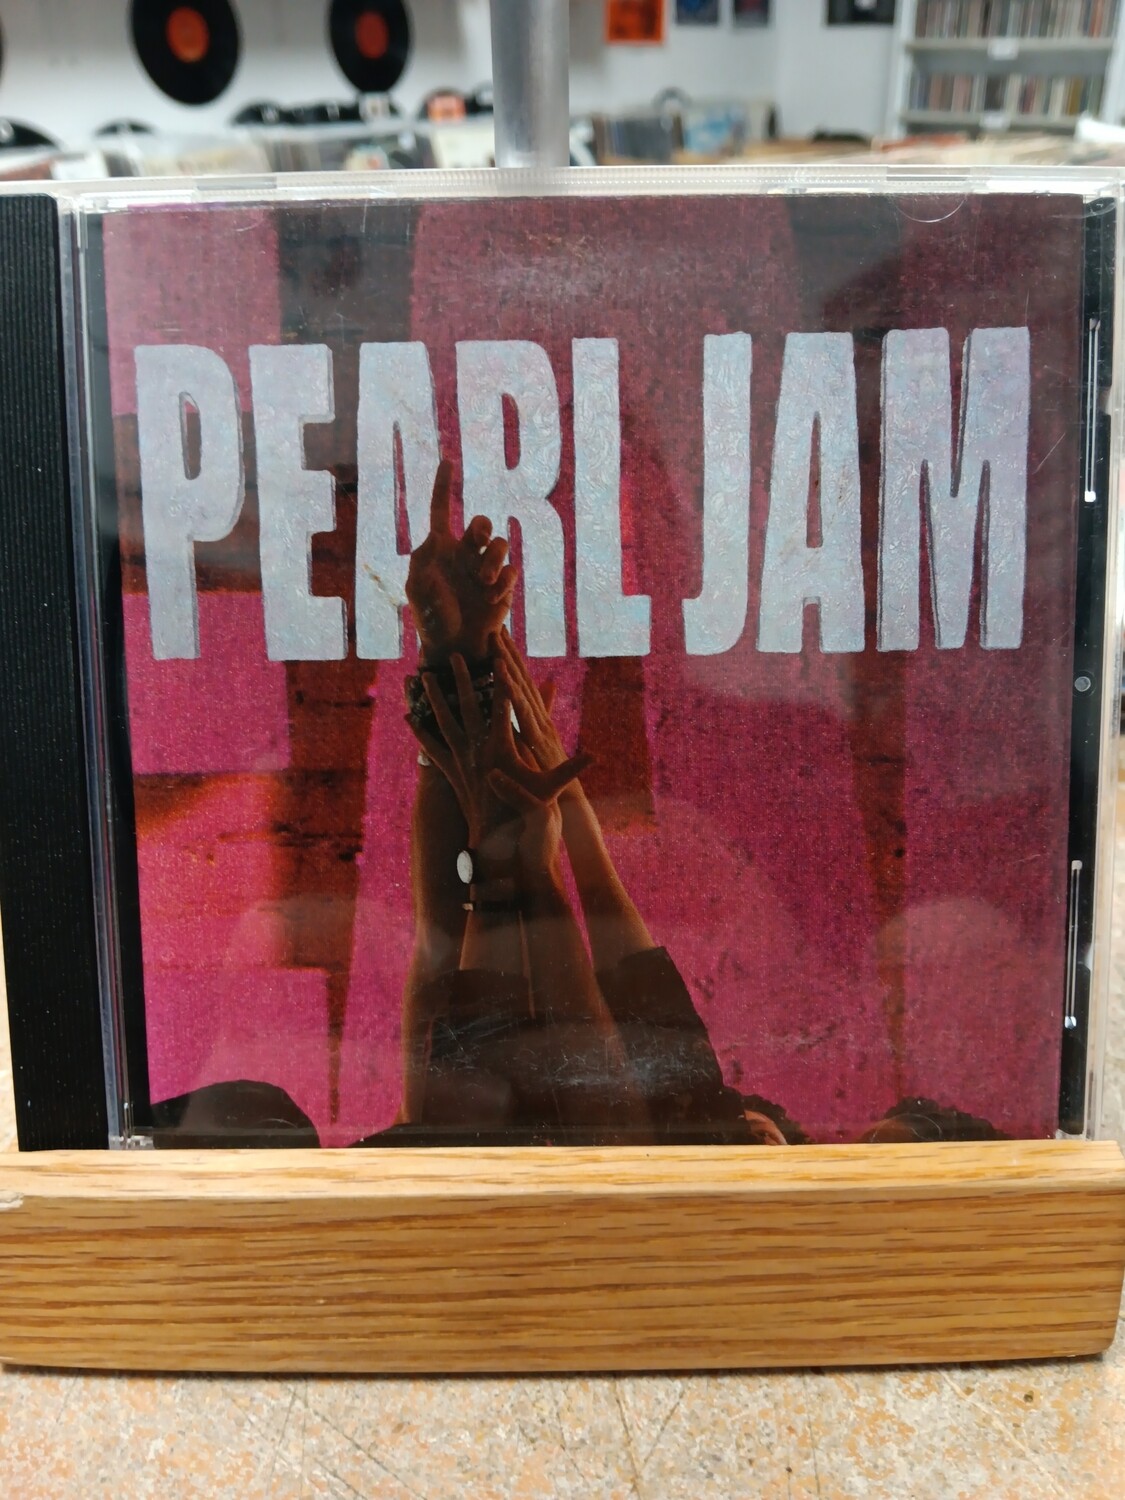 Pearl Jam - Ten (CD)